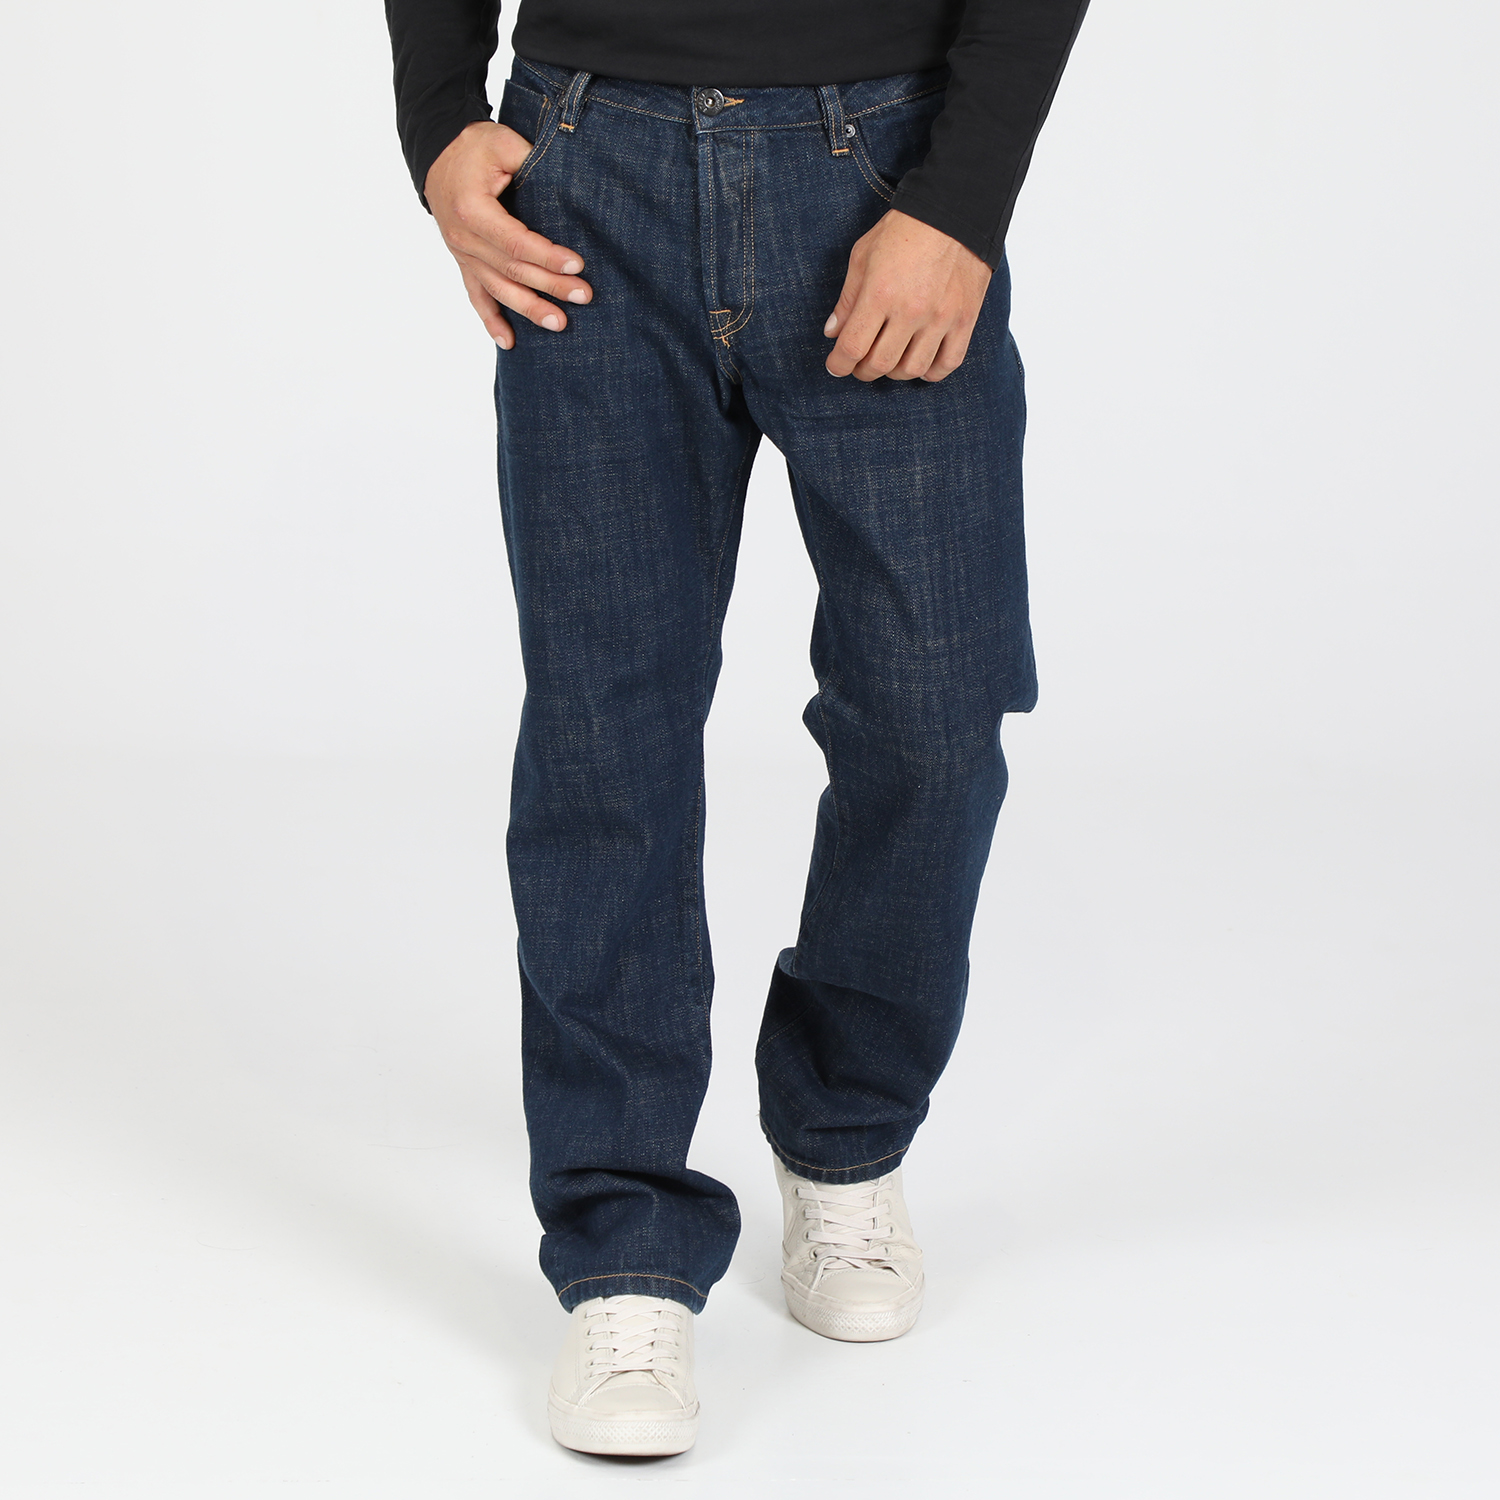 Ανδρικά/Ρούχα/Τζίν/Straight STAFF JEANS - Ανδρικό jean παντελόνι STAFF JEANS AMBER σκούρο μπλε